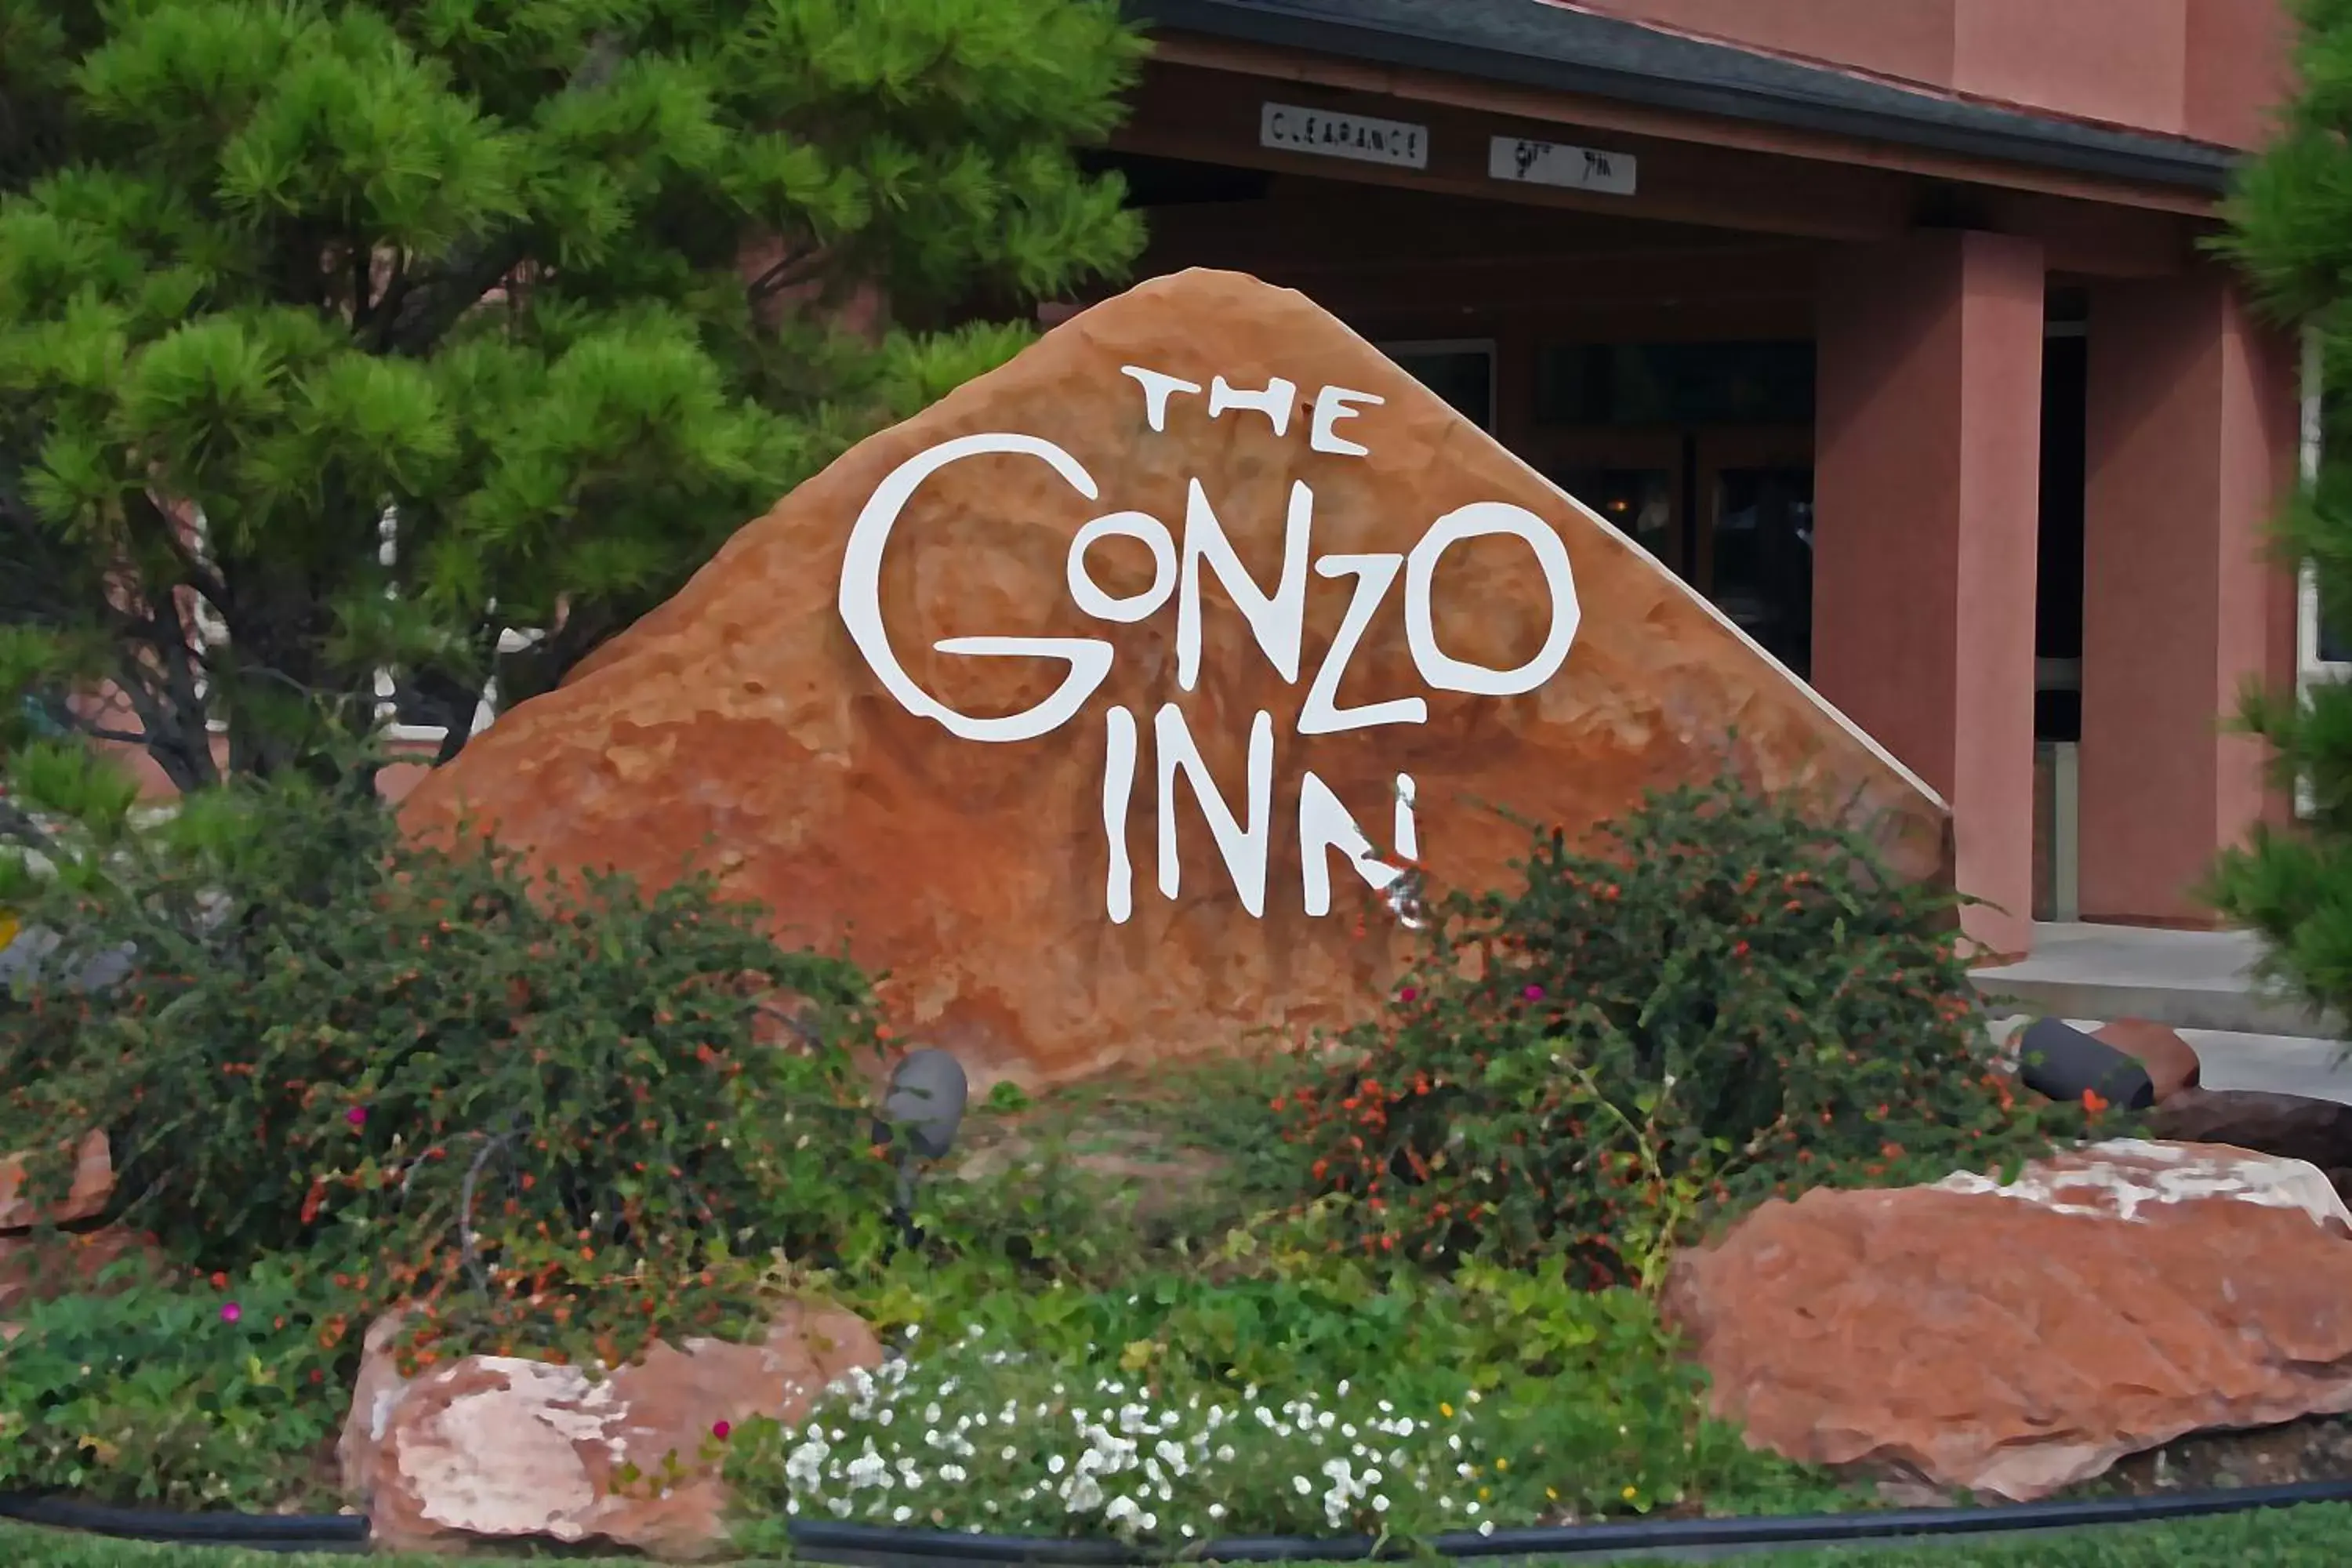 Facade/entrance in The Gonzo Inn